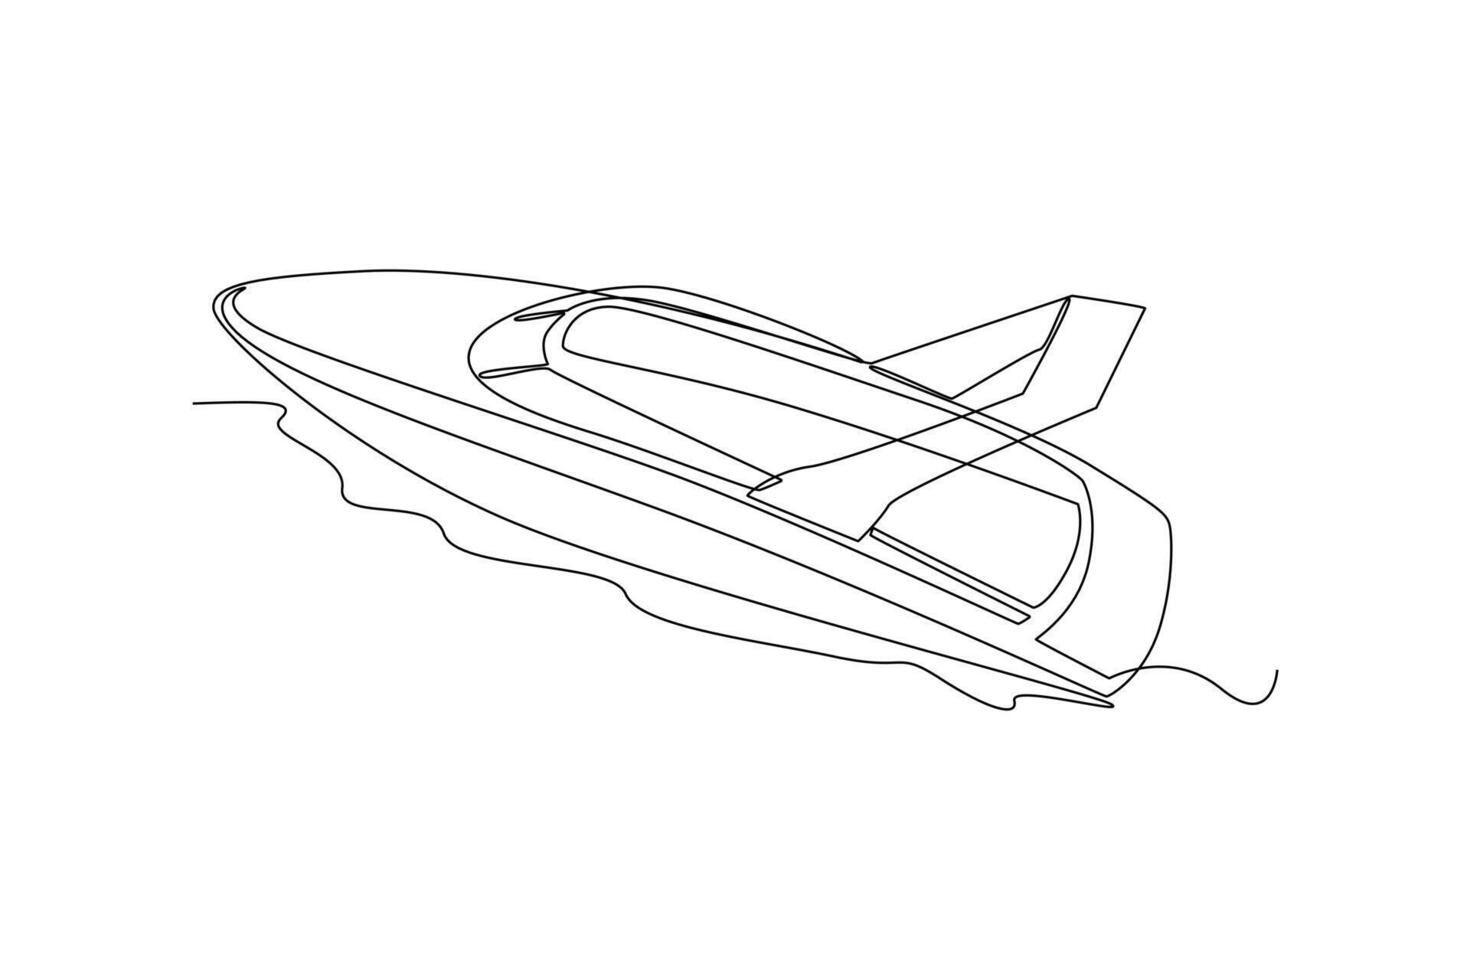 einer kontinuierlich Linie Zeichnung von Meer Transport Konzept. Gekritzel Vektor Illustration im einfach linear Stil.